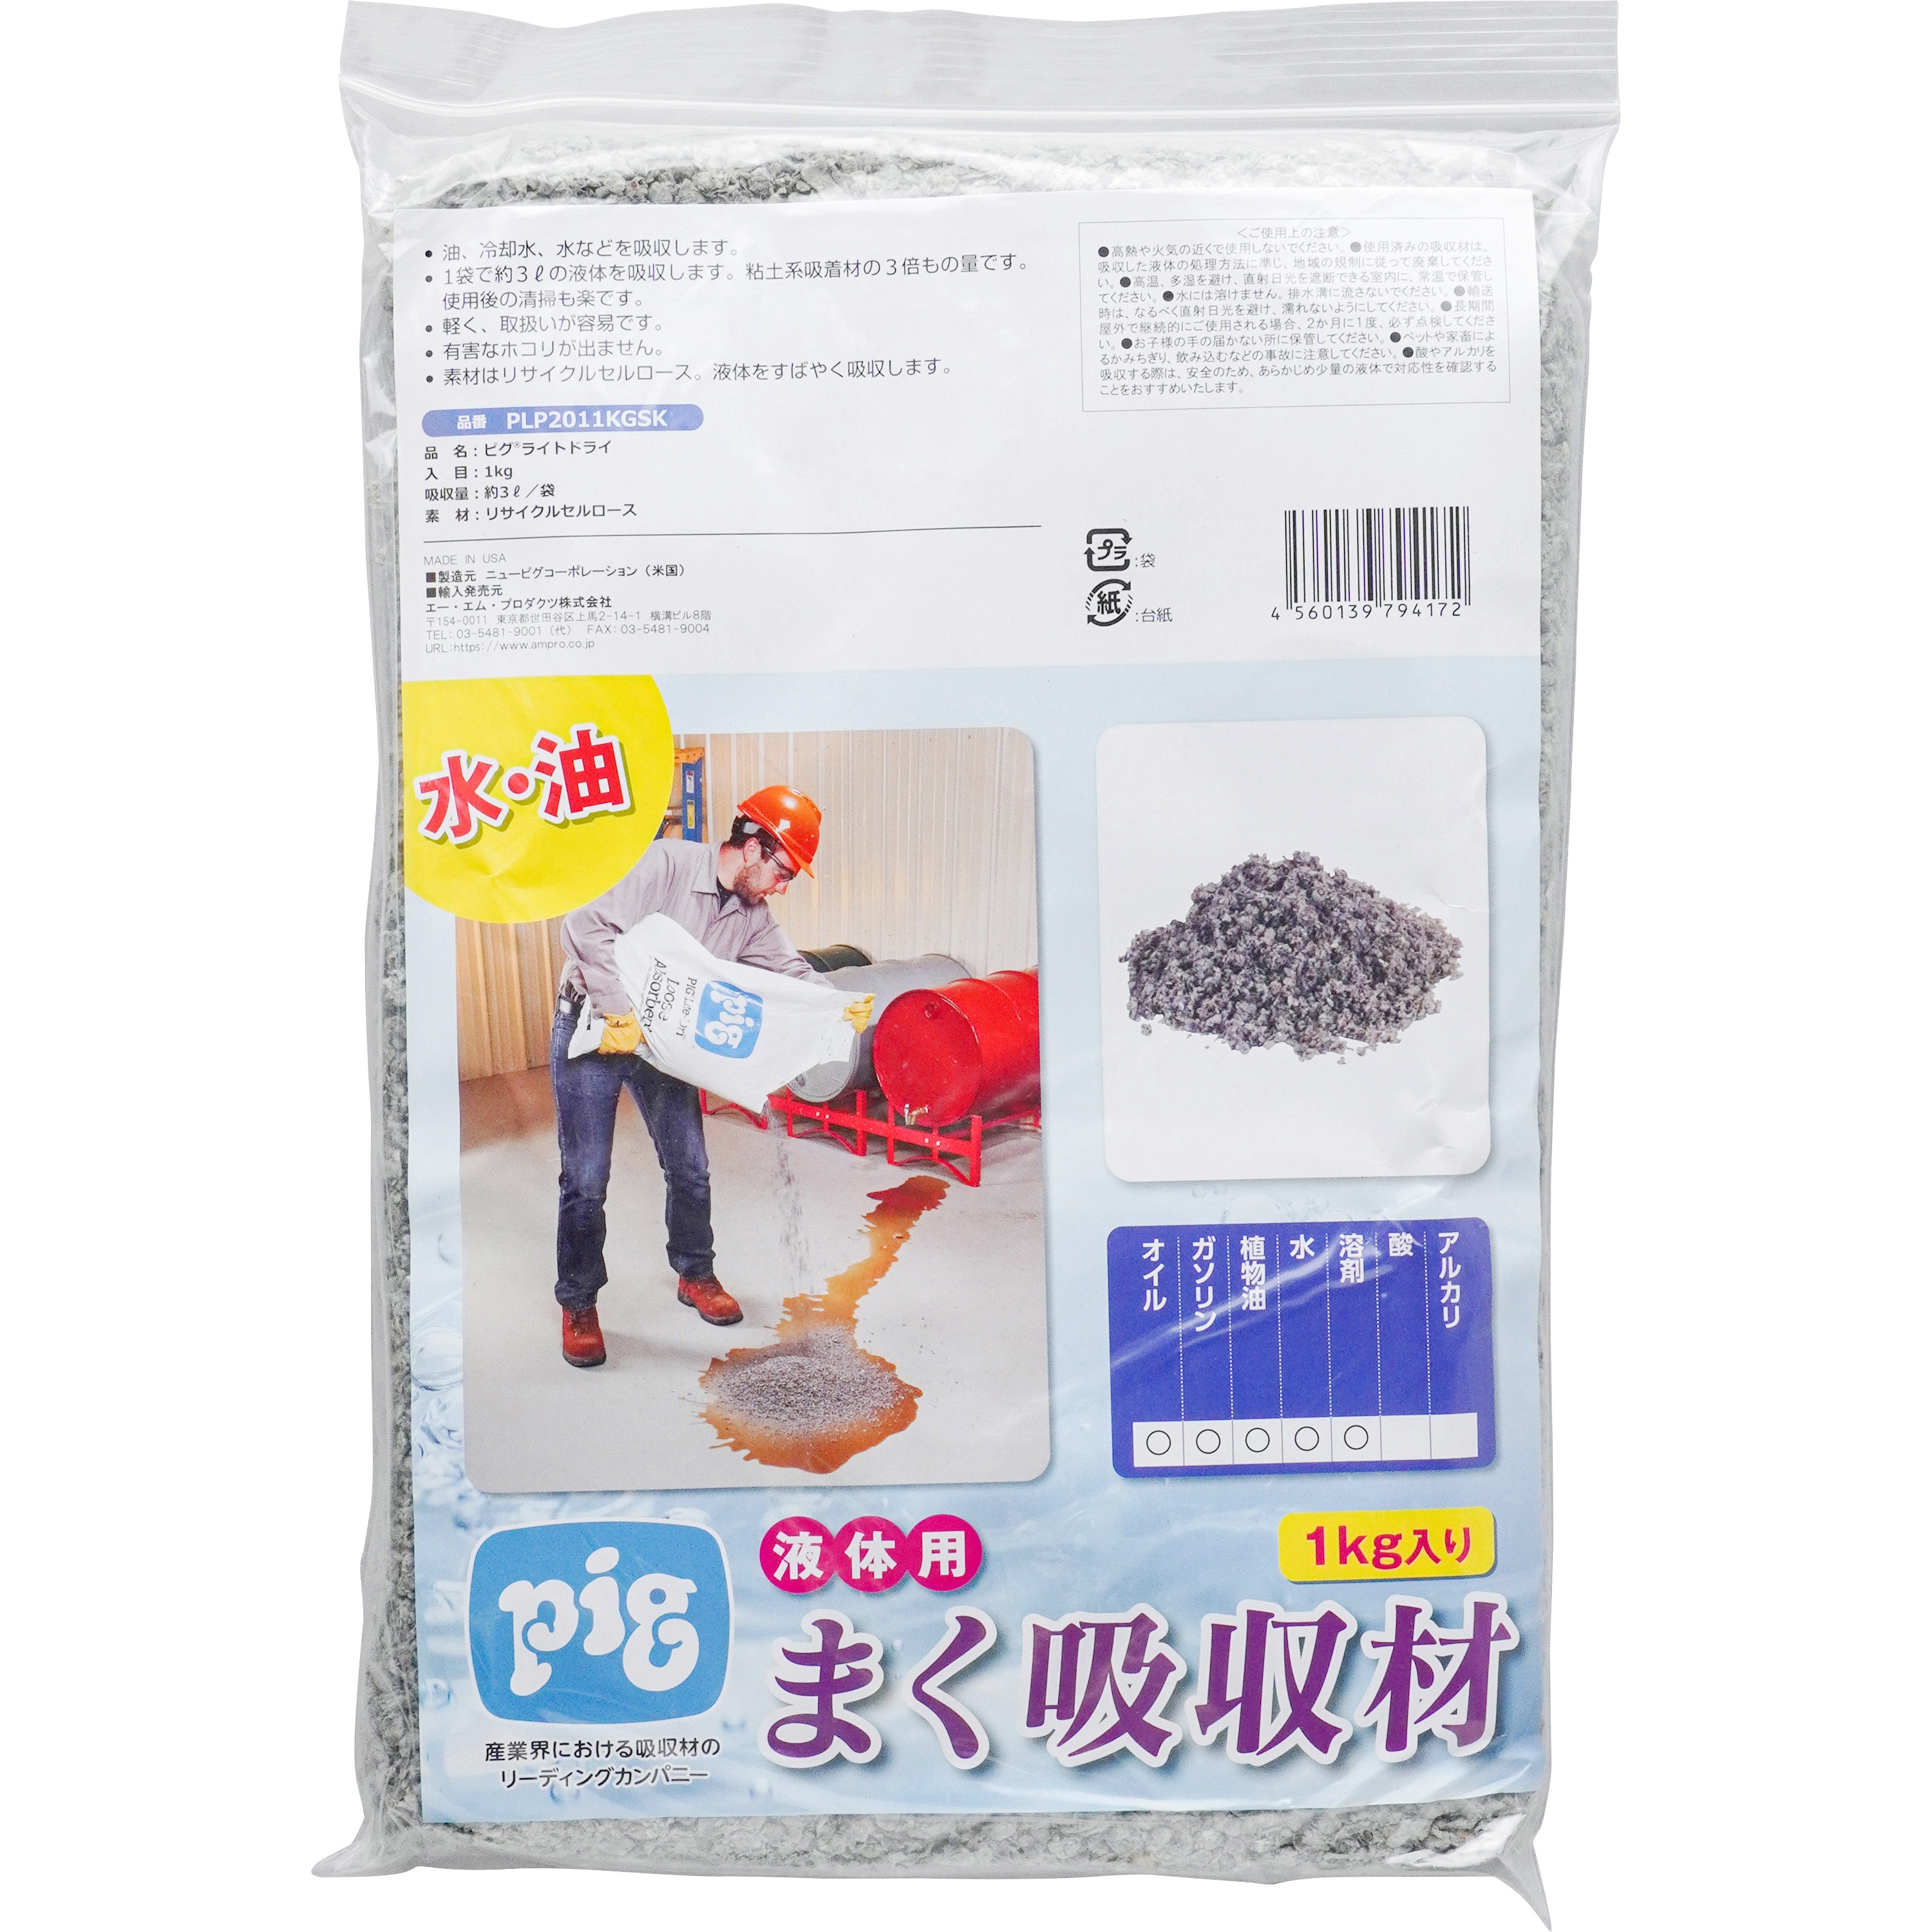 PLP2011KGSK ピグライトドライ(水油用粉) SK 1袋(1kg) ニューピグ